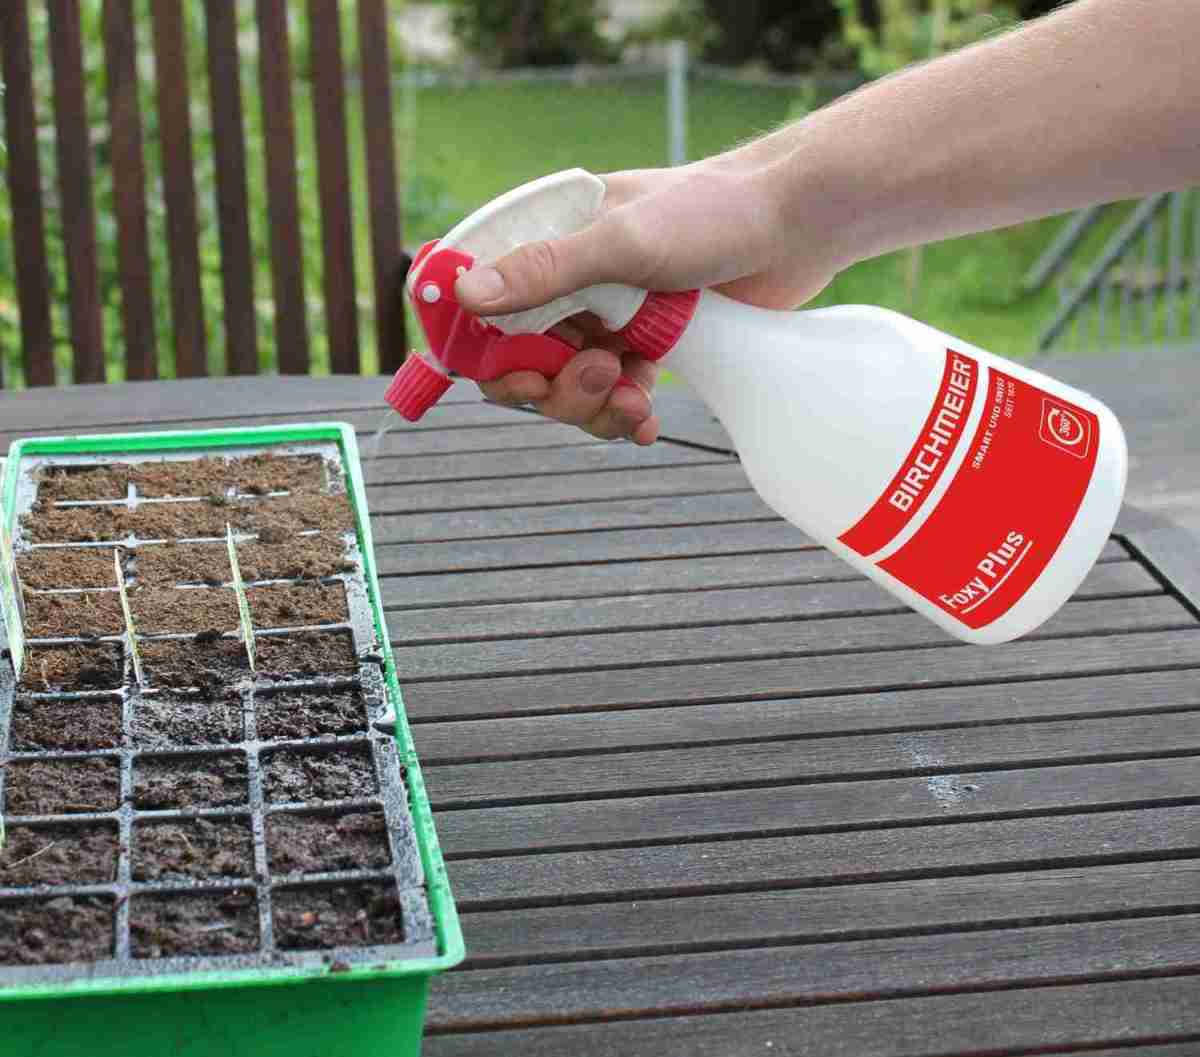 Garten Setzlinge richtig pflegen mit Produkten der Birchmeier Sprühtechnik AG - News, Bild 1